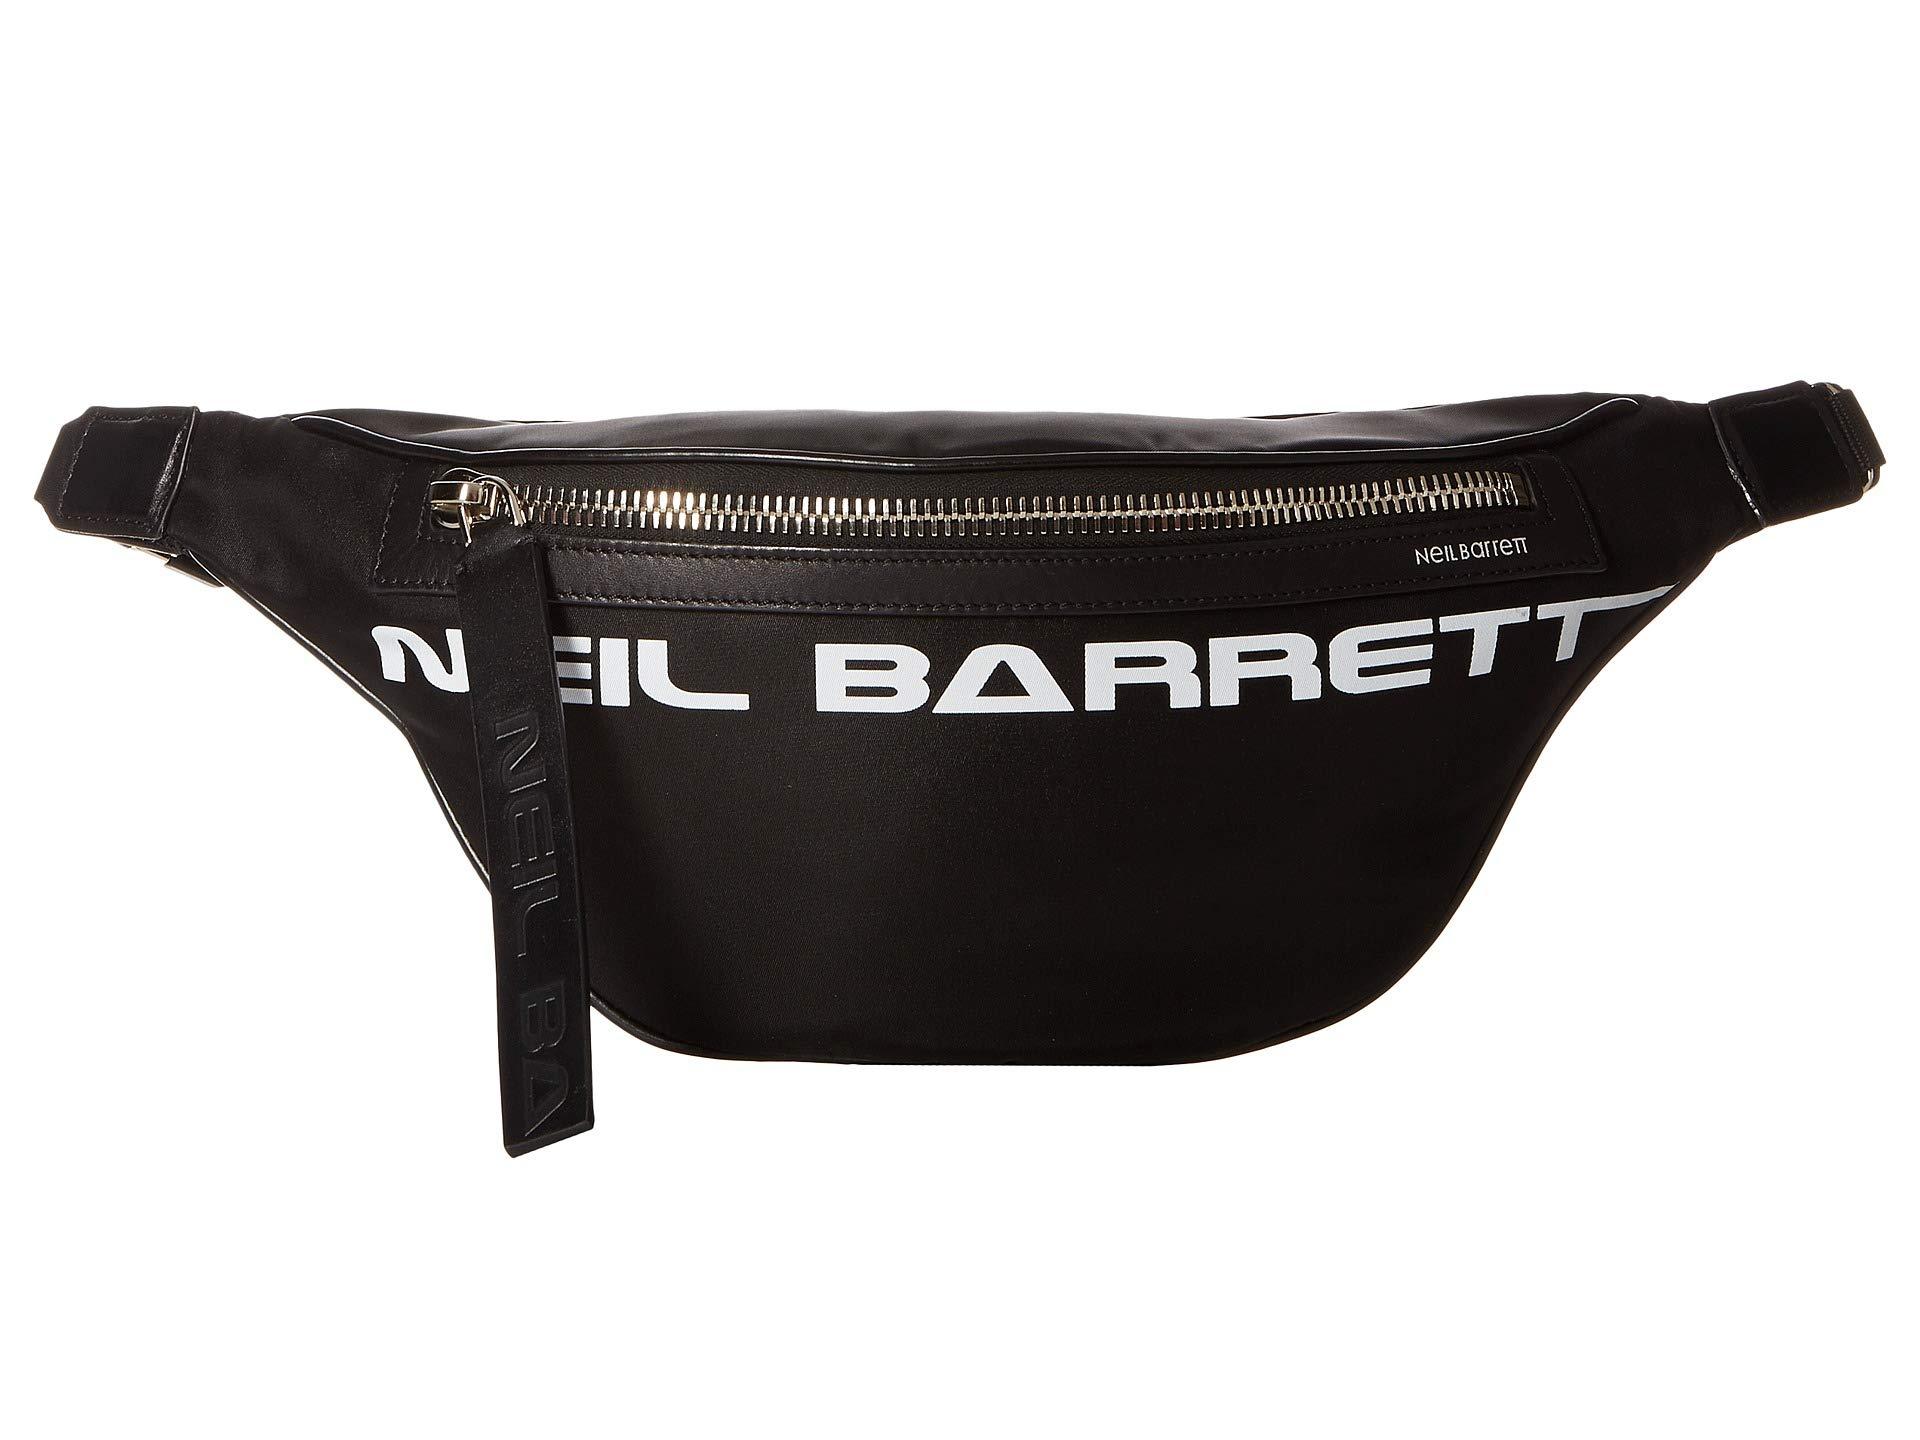 Neil Barrett Made In Classic Belt Bag in Black for Men - Lyst